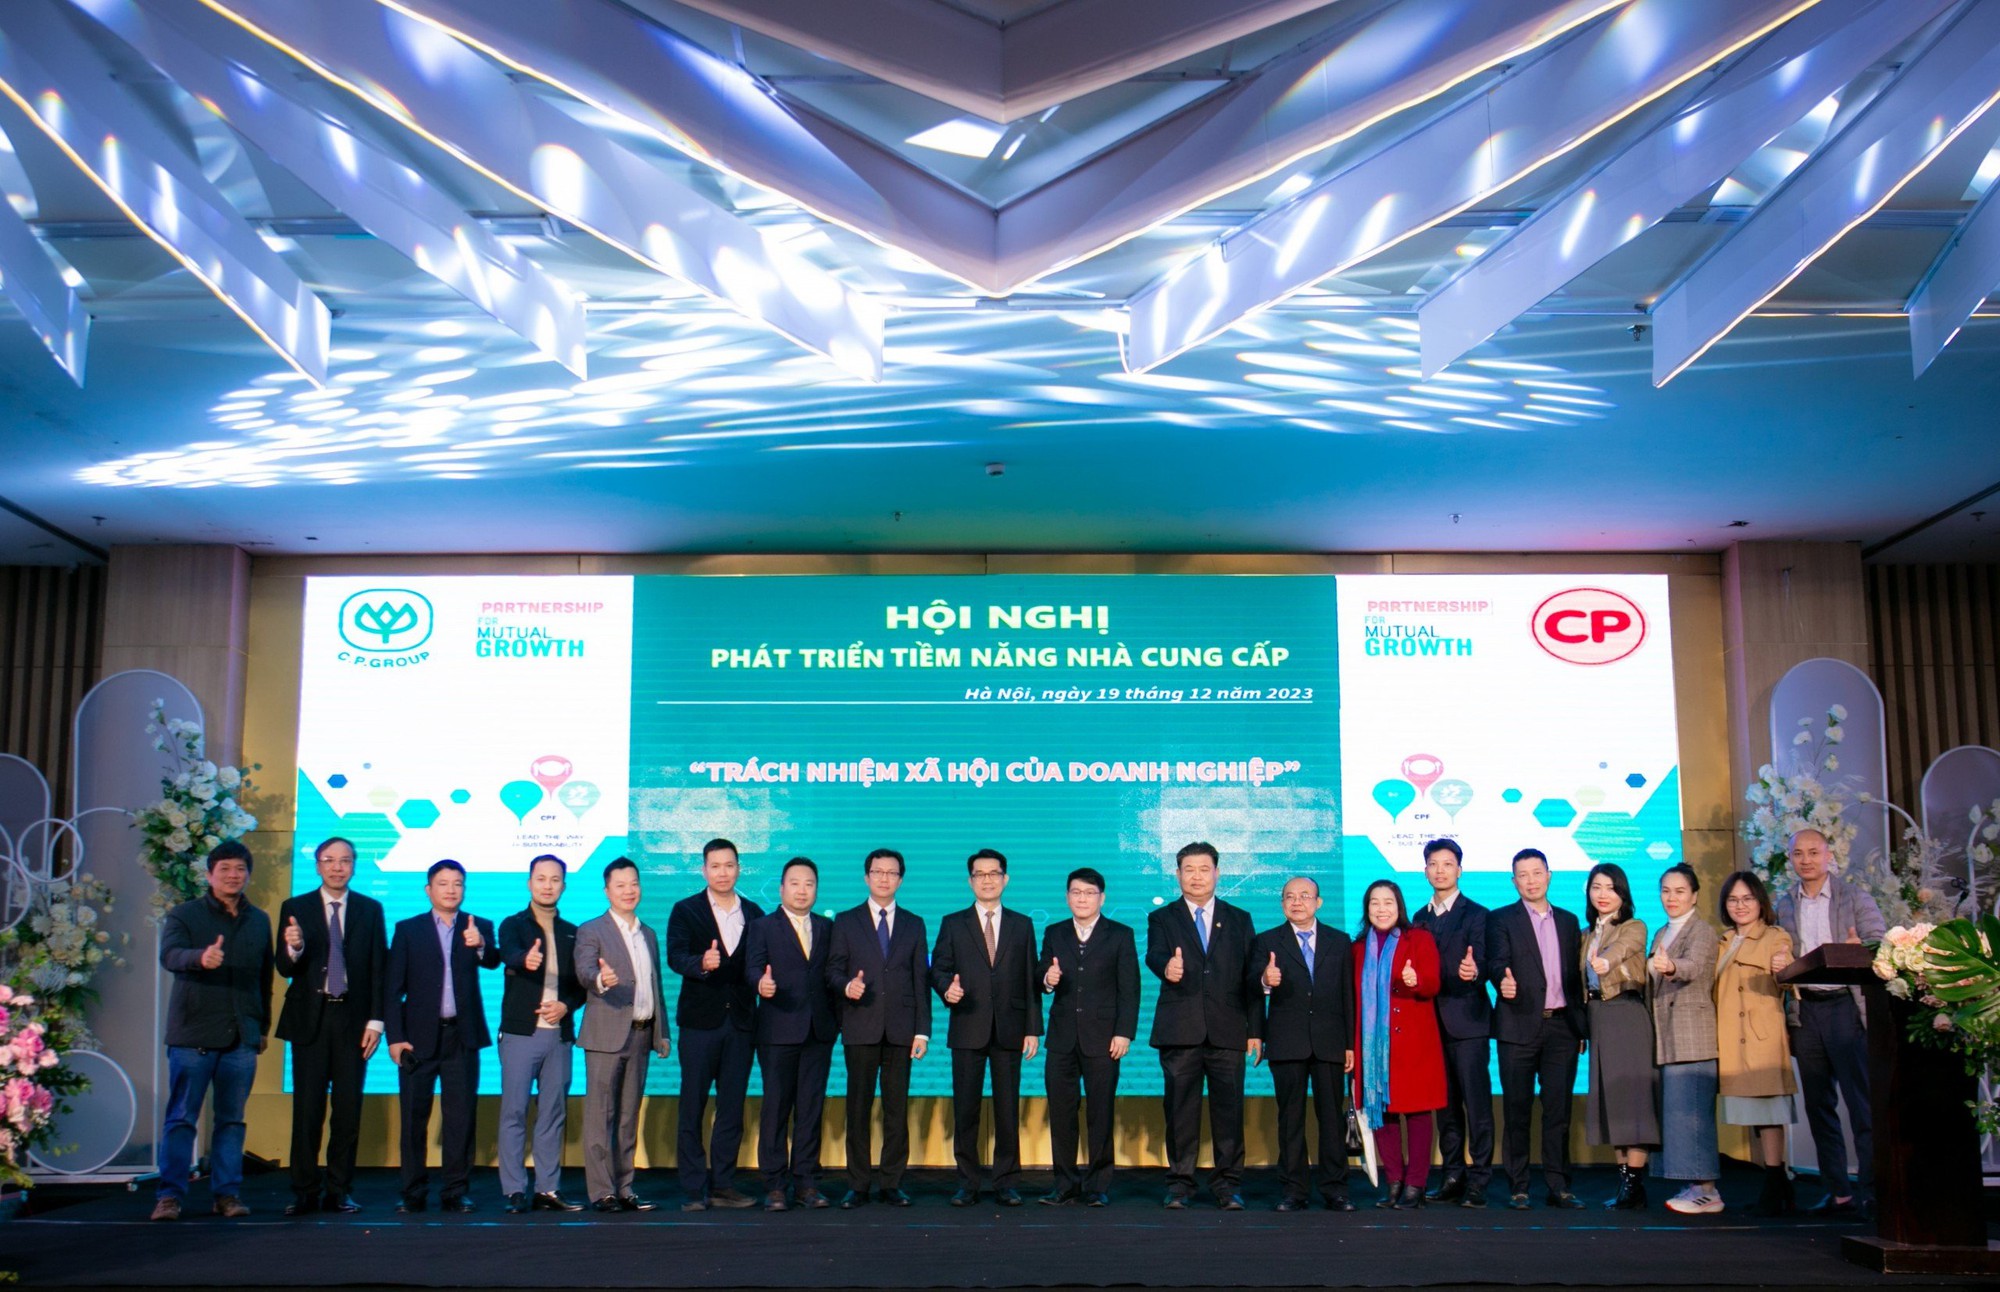 C.P. Việt Nam tổ chức thành công &quot;Hội nghị phát triển tiềm năng nhà cung cấp&quot; tại khu vực phía Bắc - Ảnh 3.